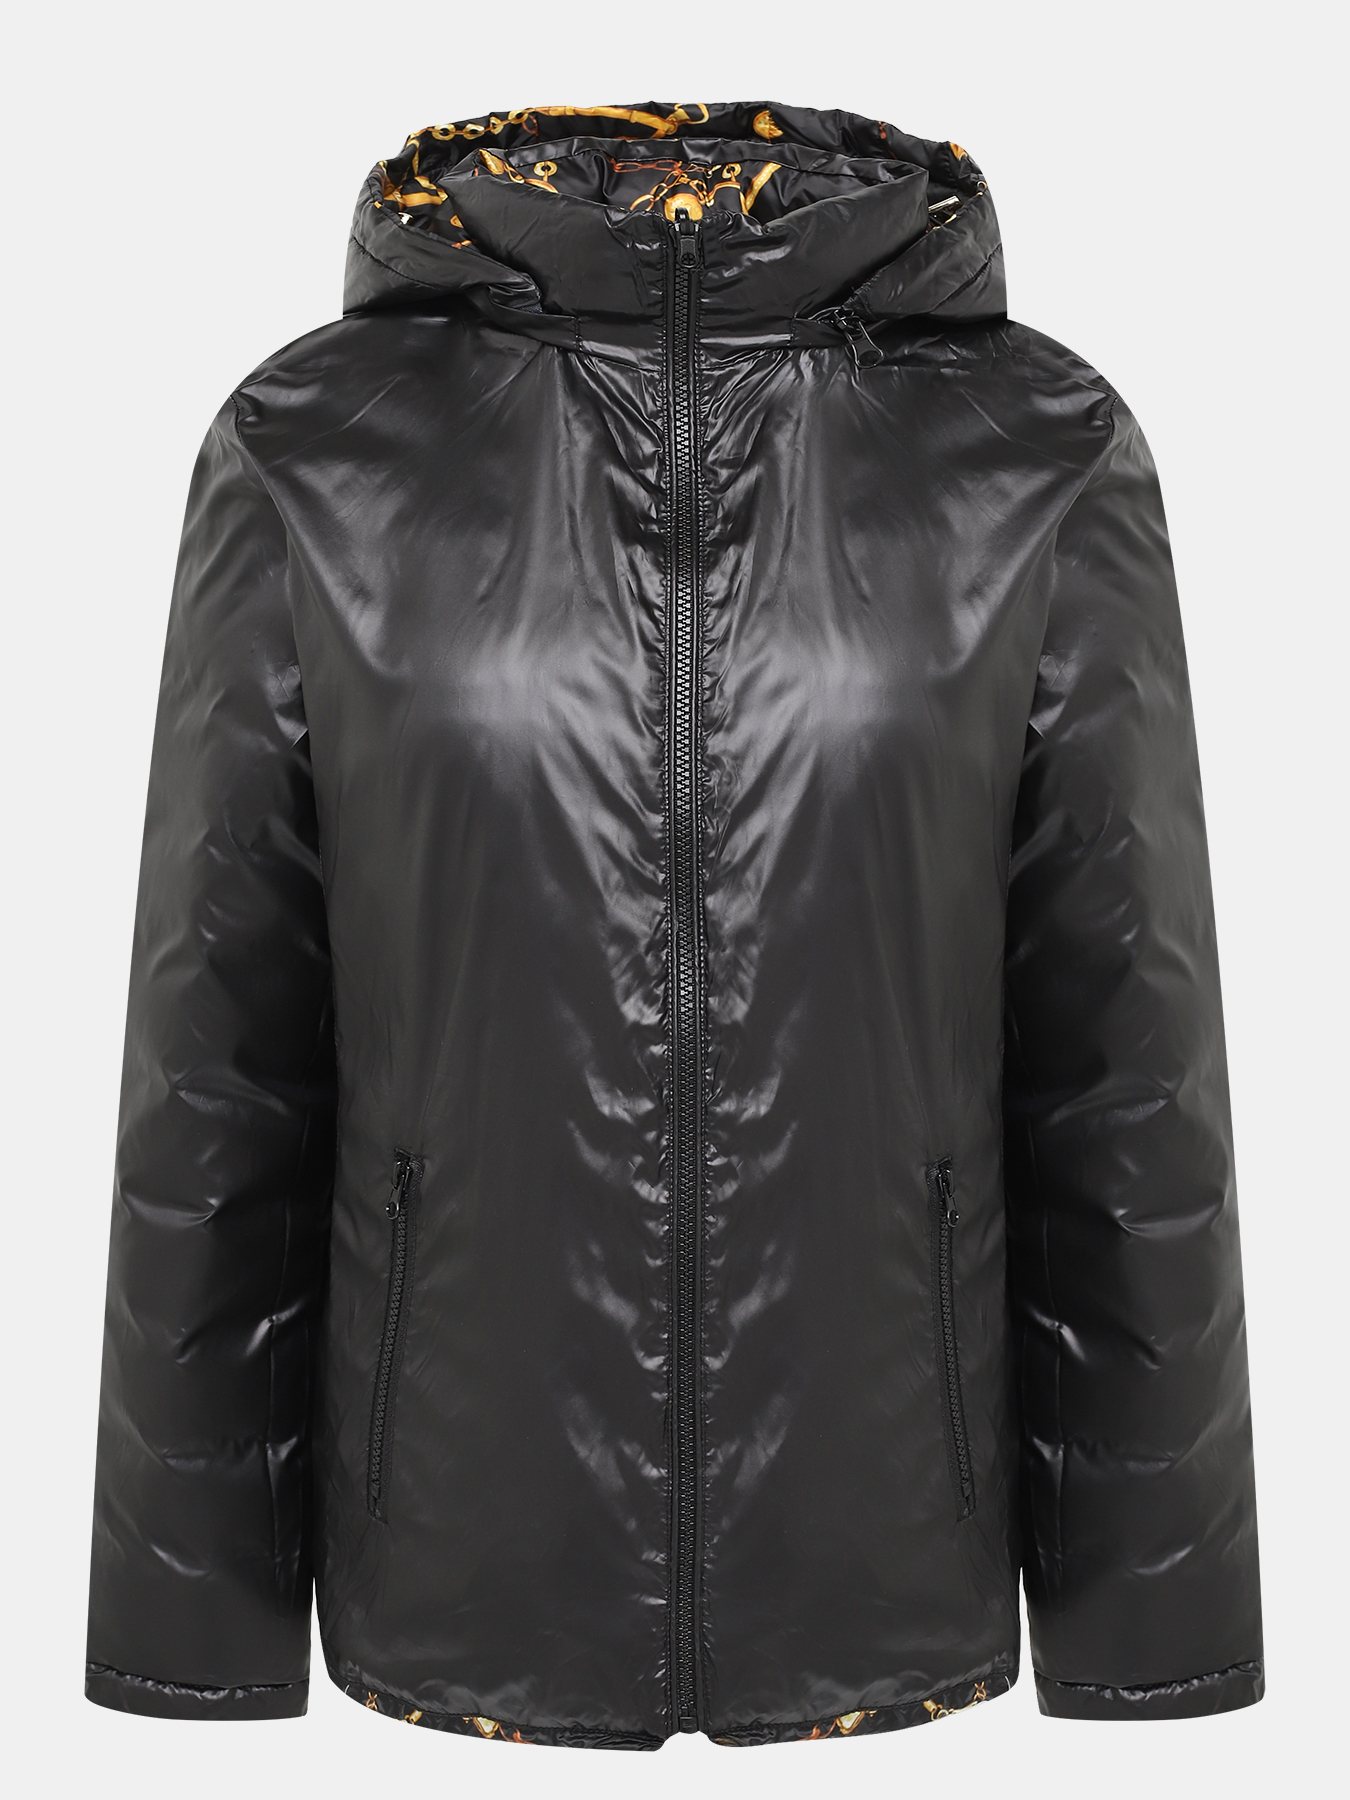 Двусторонняя куртка Alessandro Manzoni Purpur 405288-009, цвет мультиколор, размер 56-58